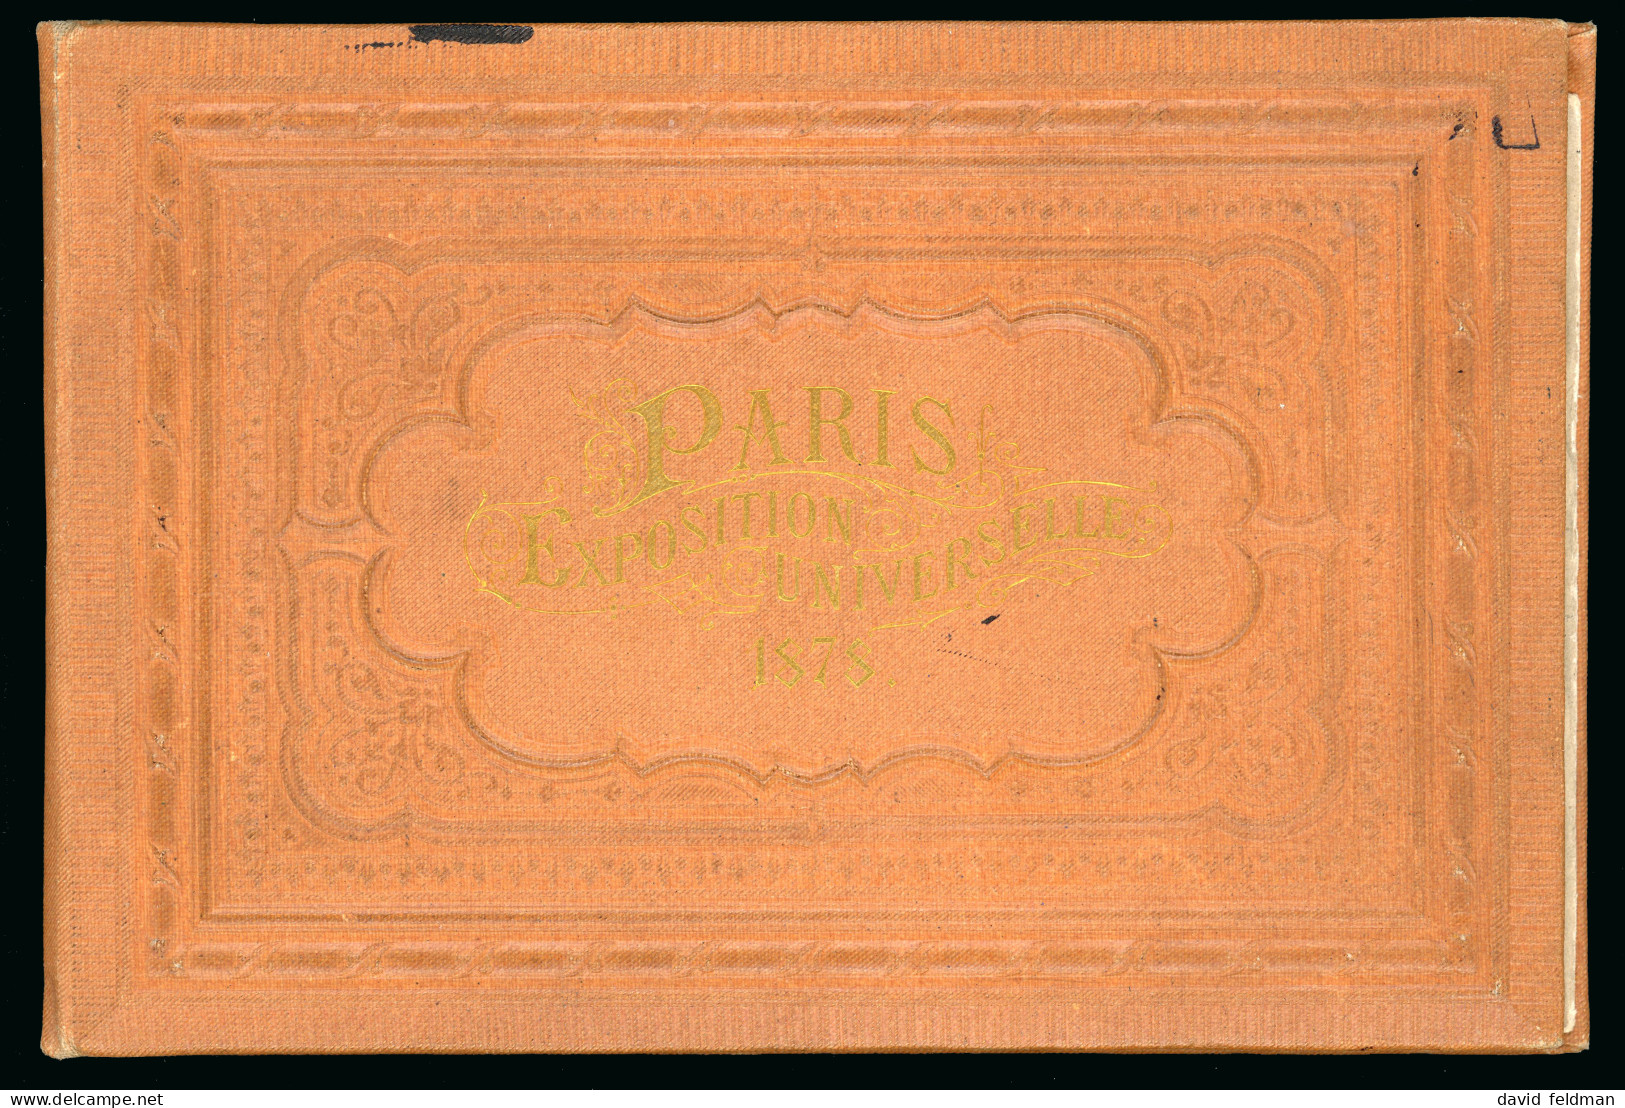 Cartes Postales: 1878, Carnet Inscrit 'PARIS/EXPOSITION - 5 - 99 Cartes